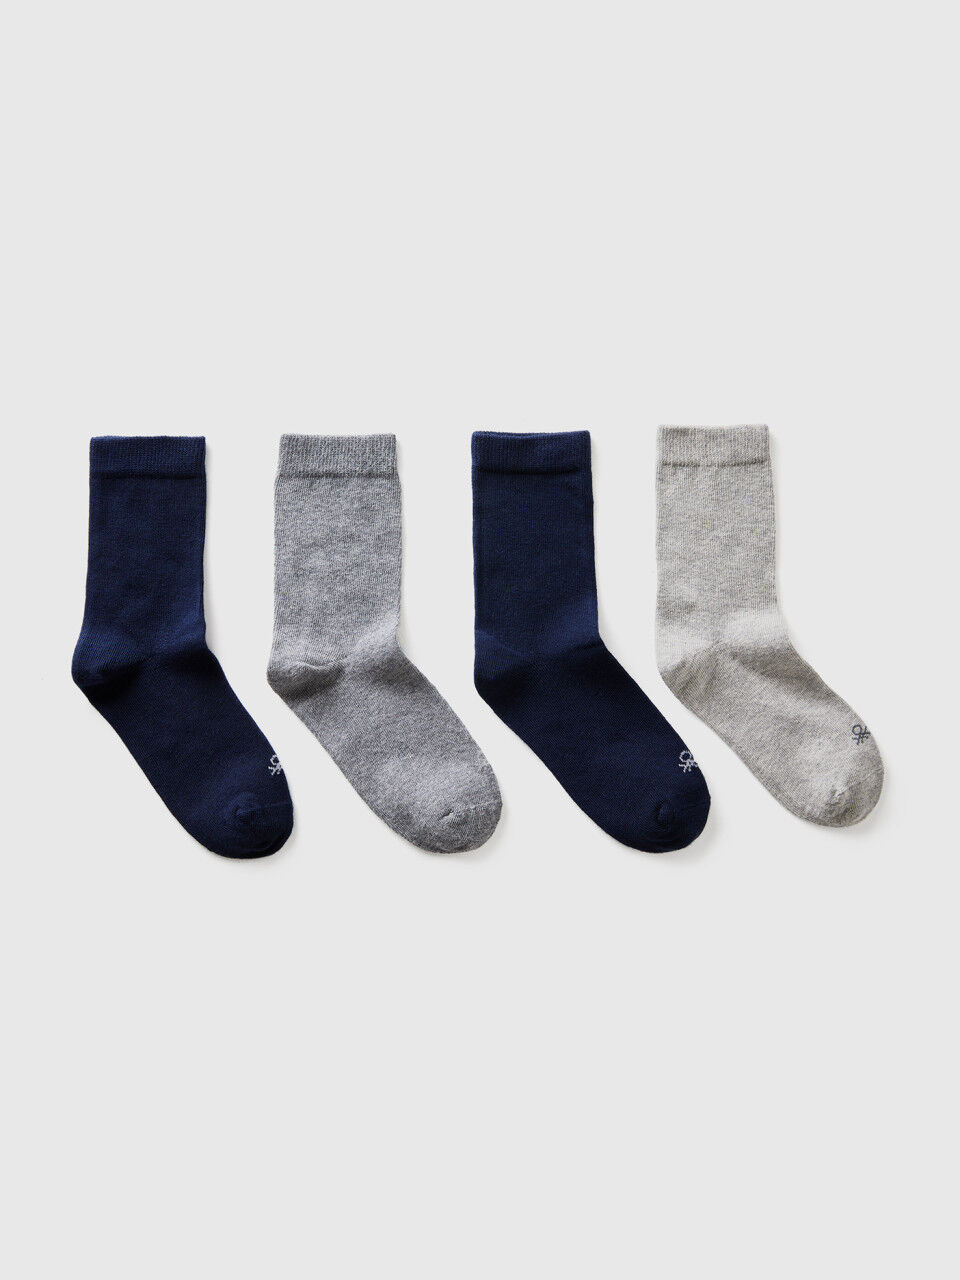 Quatro pares de meias cinzentas e azuis